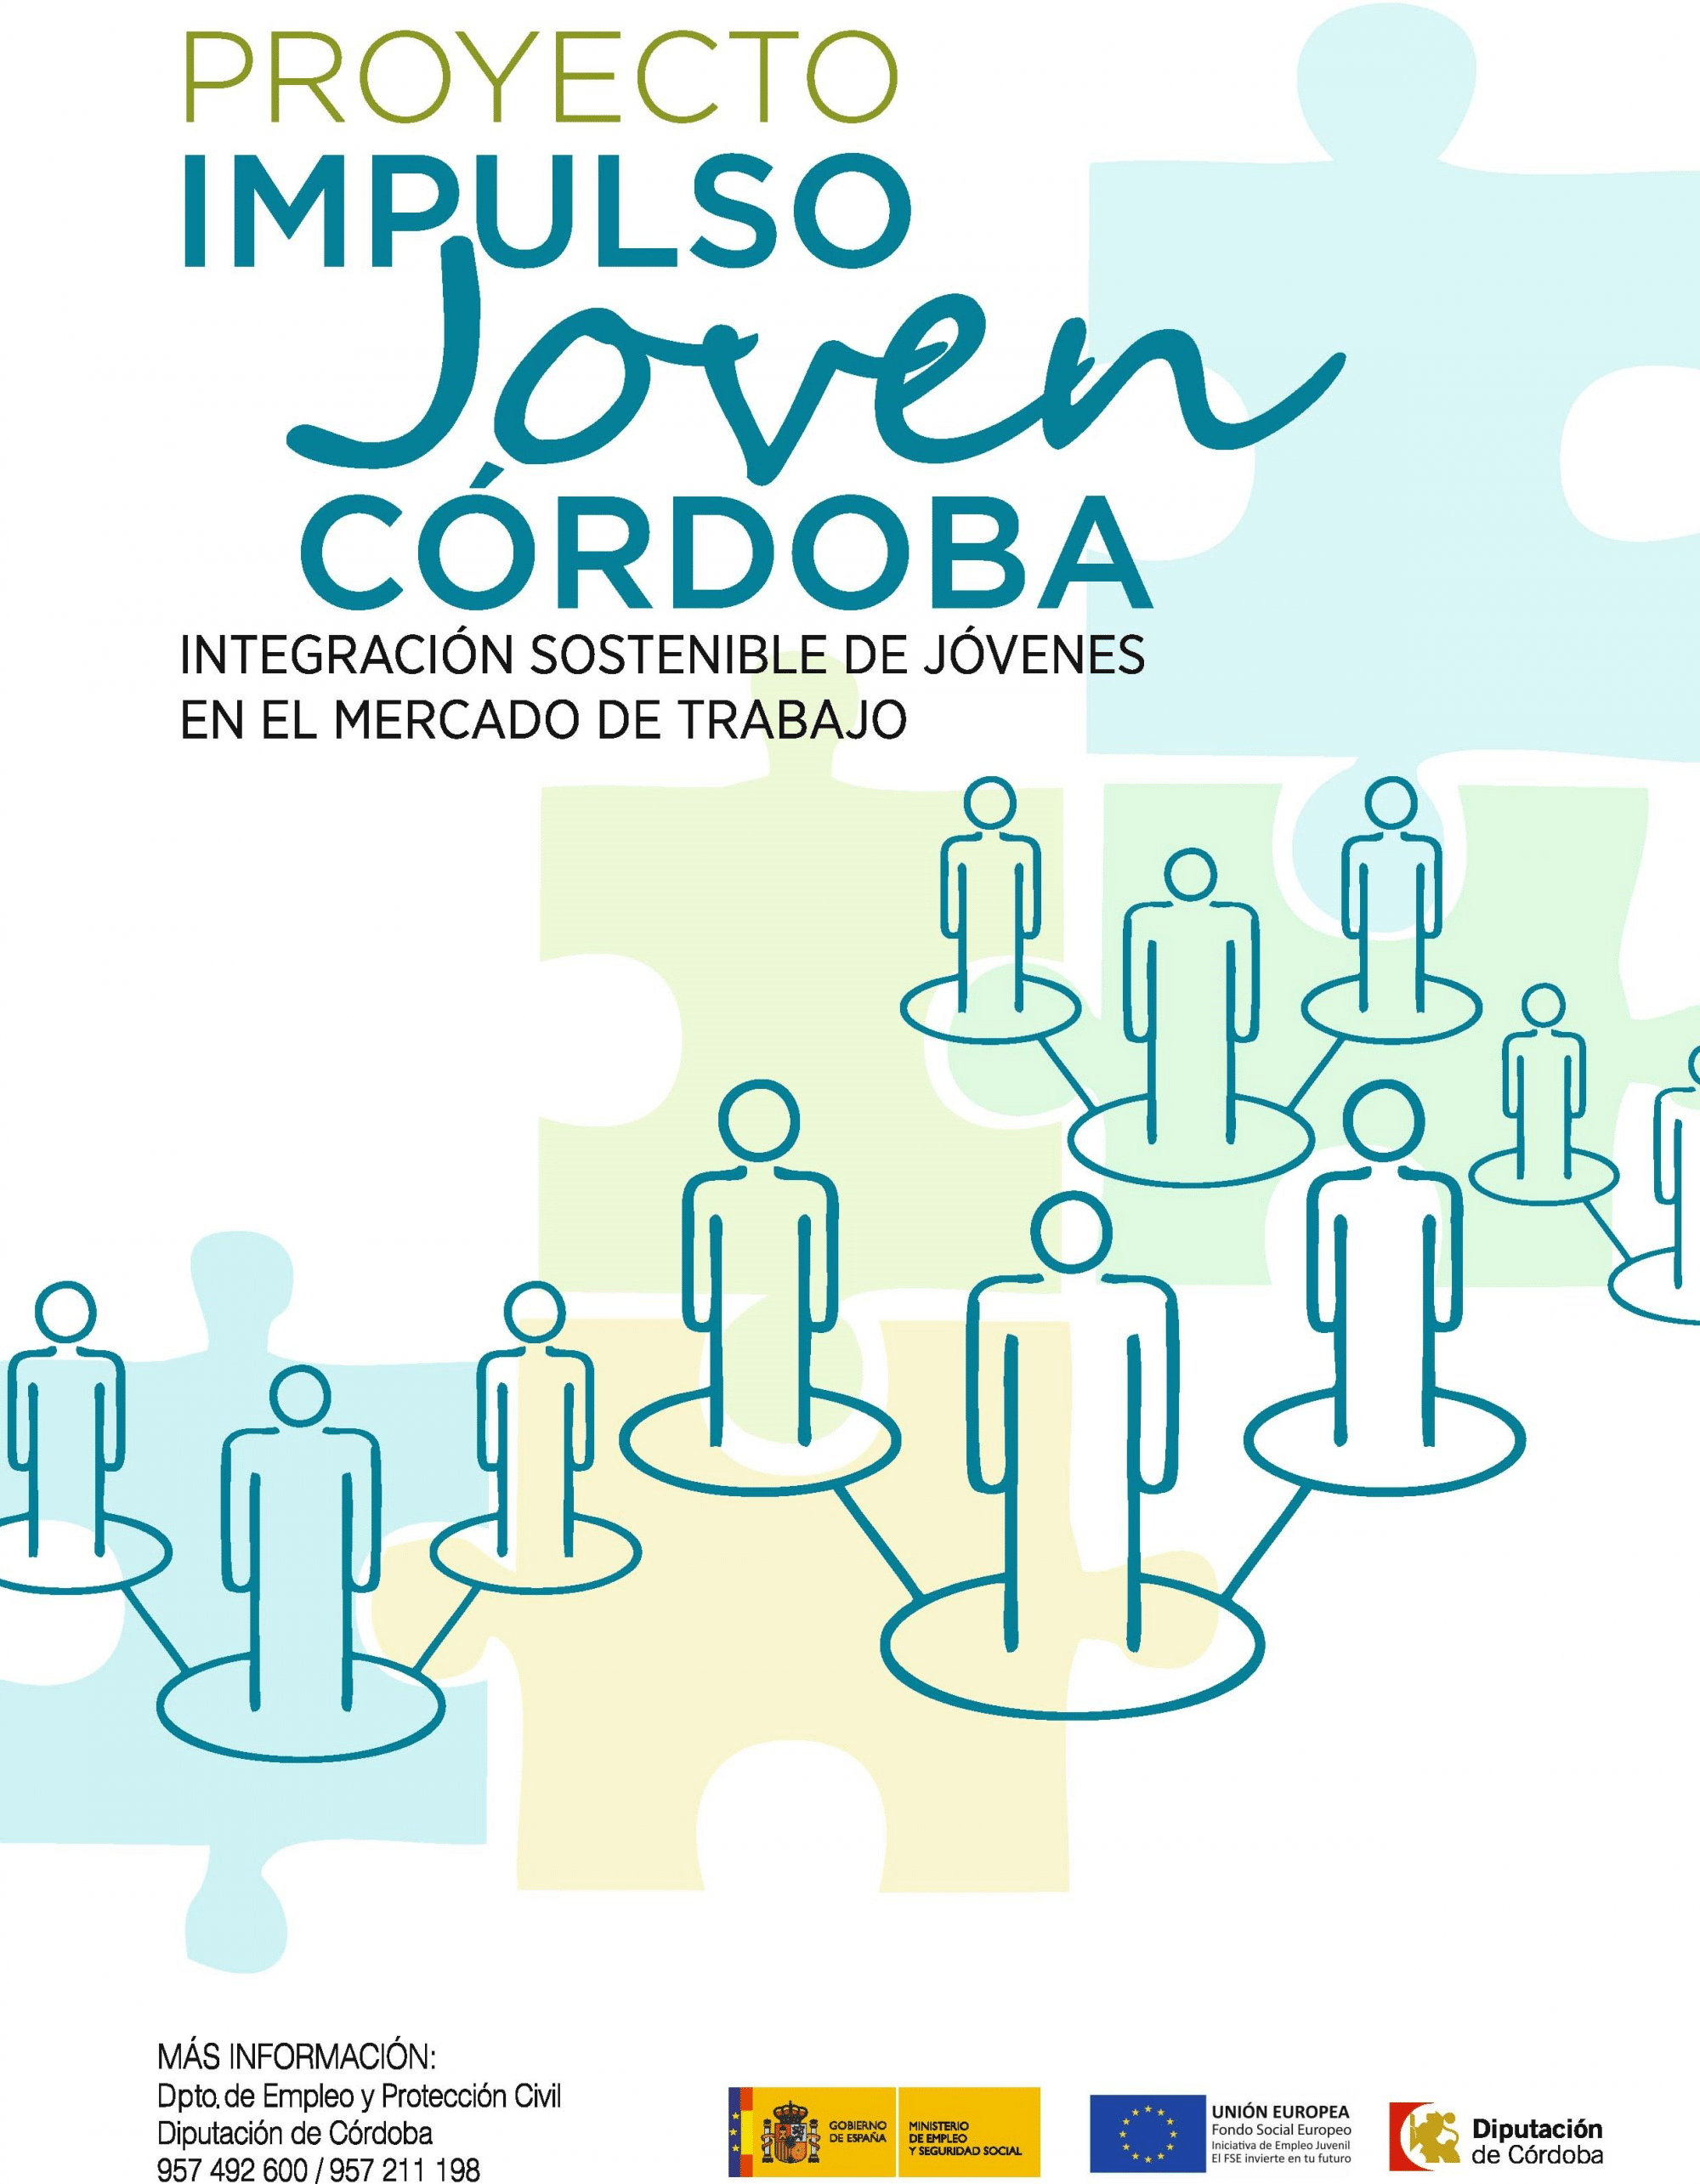 Impulso Joven Córdoba ofrece formación y orientación laboral a los jóvenes de la provincia a través de cinco itinerarios diferentes  1